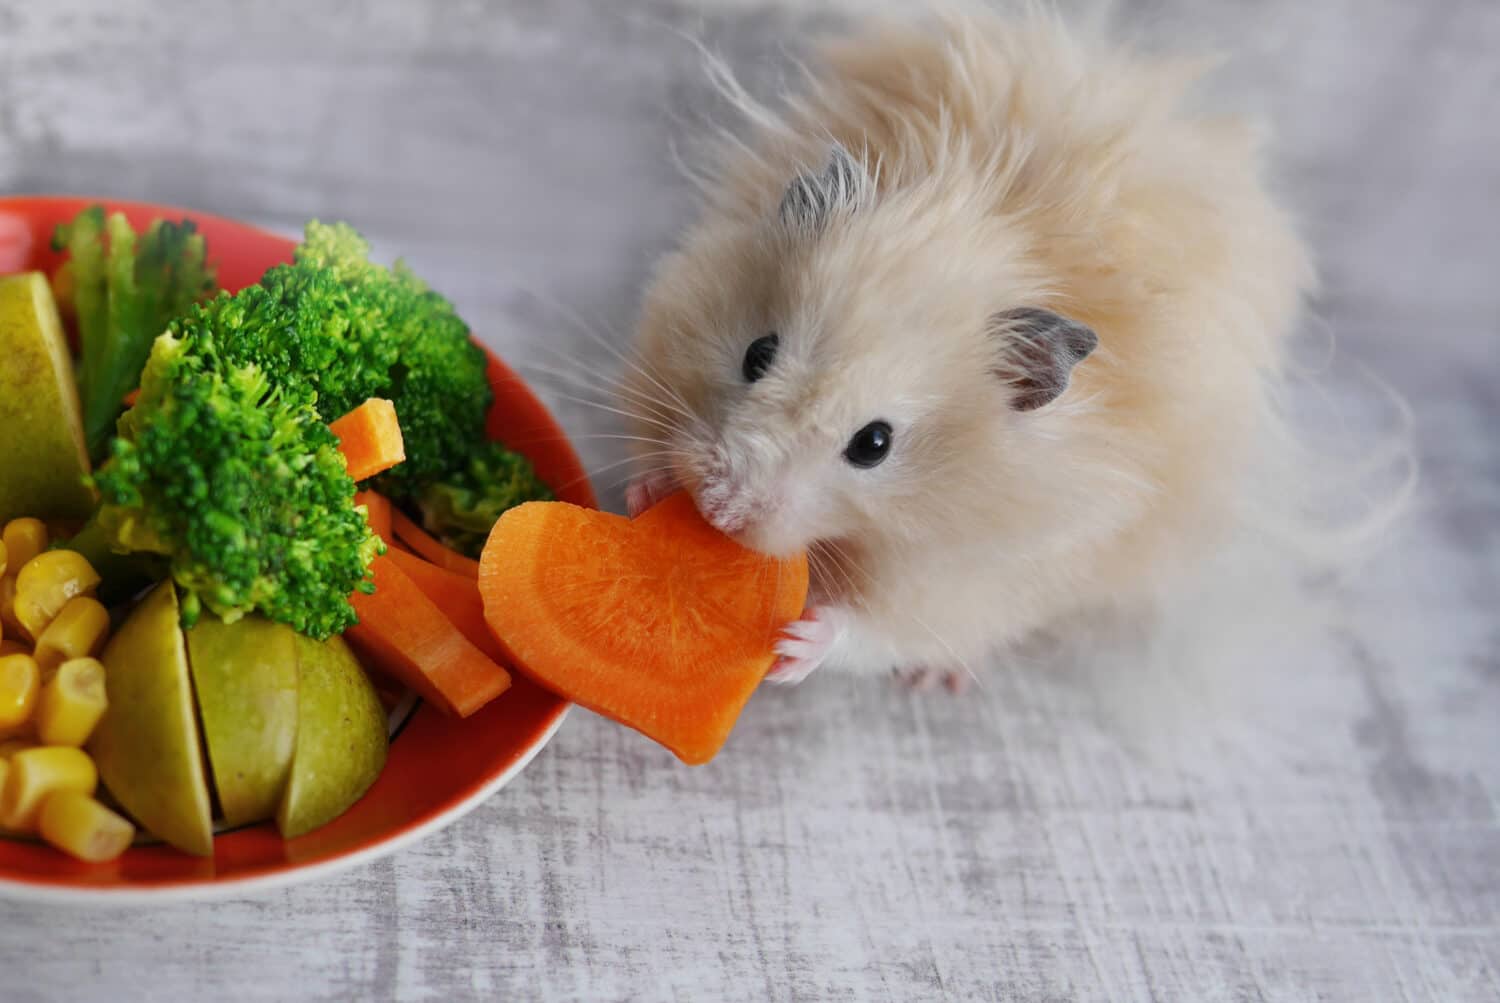 Hamster eating carrots.